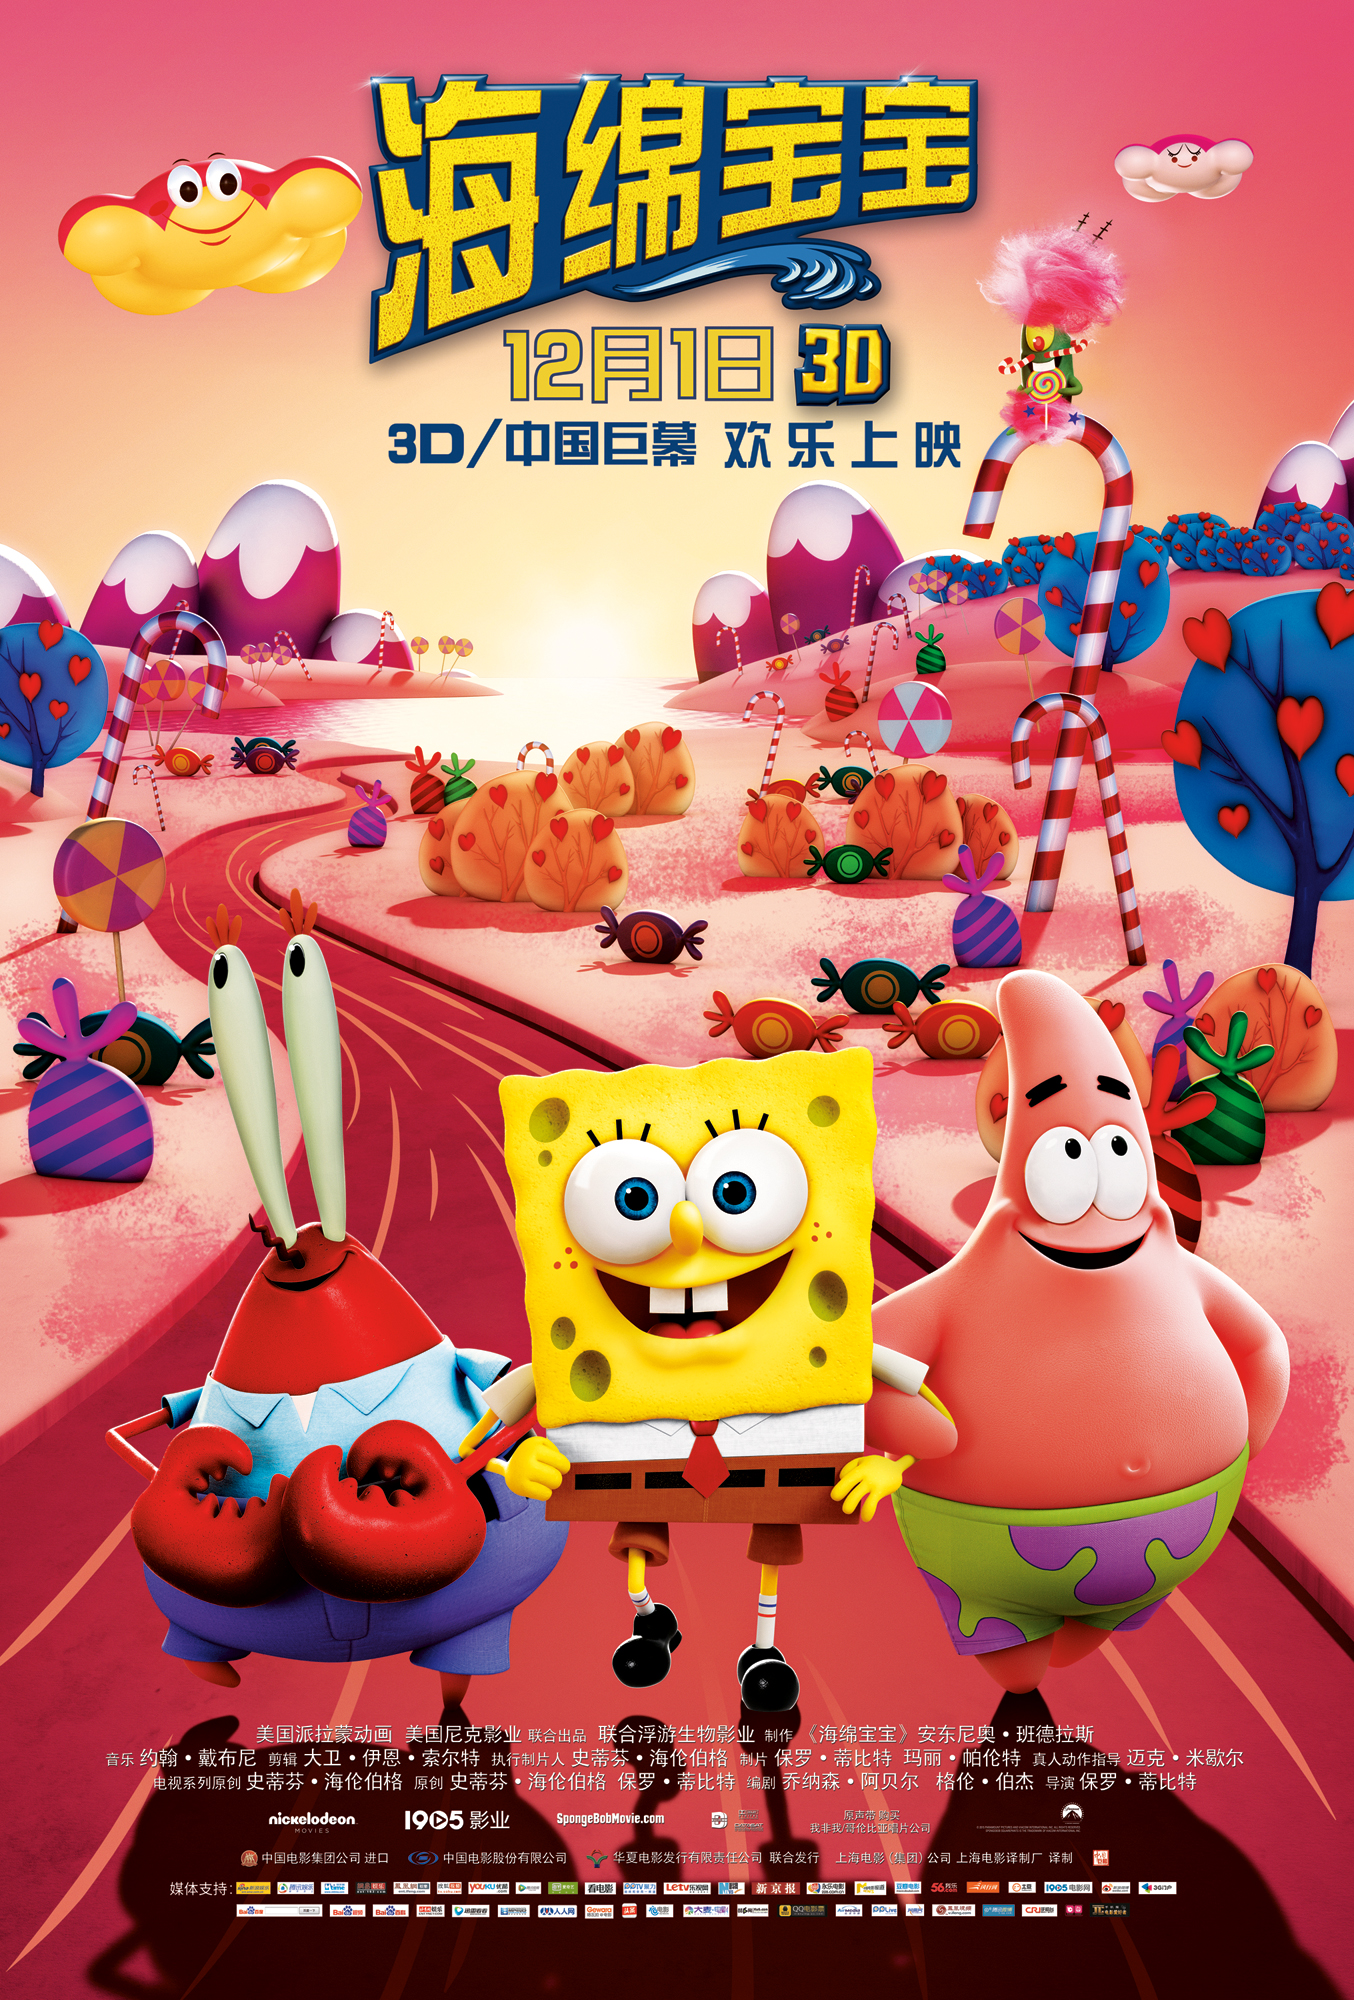 海绵宝宝 - The SpongeBob Movie: Sponge Out of Wate